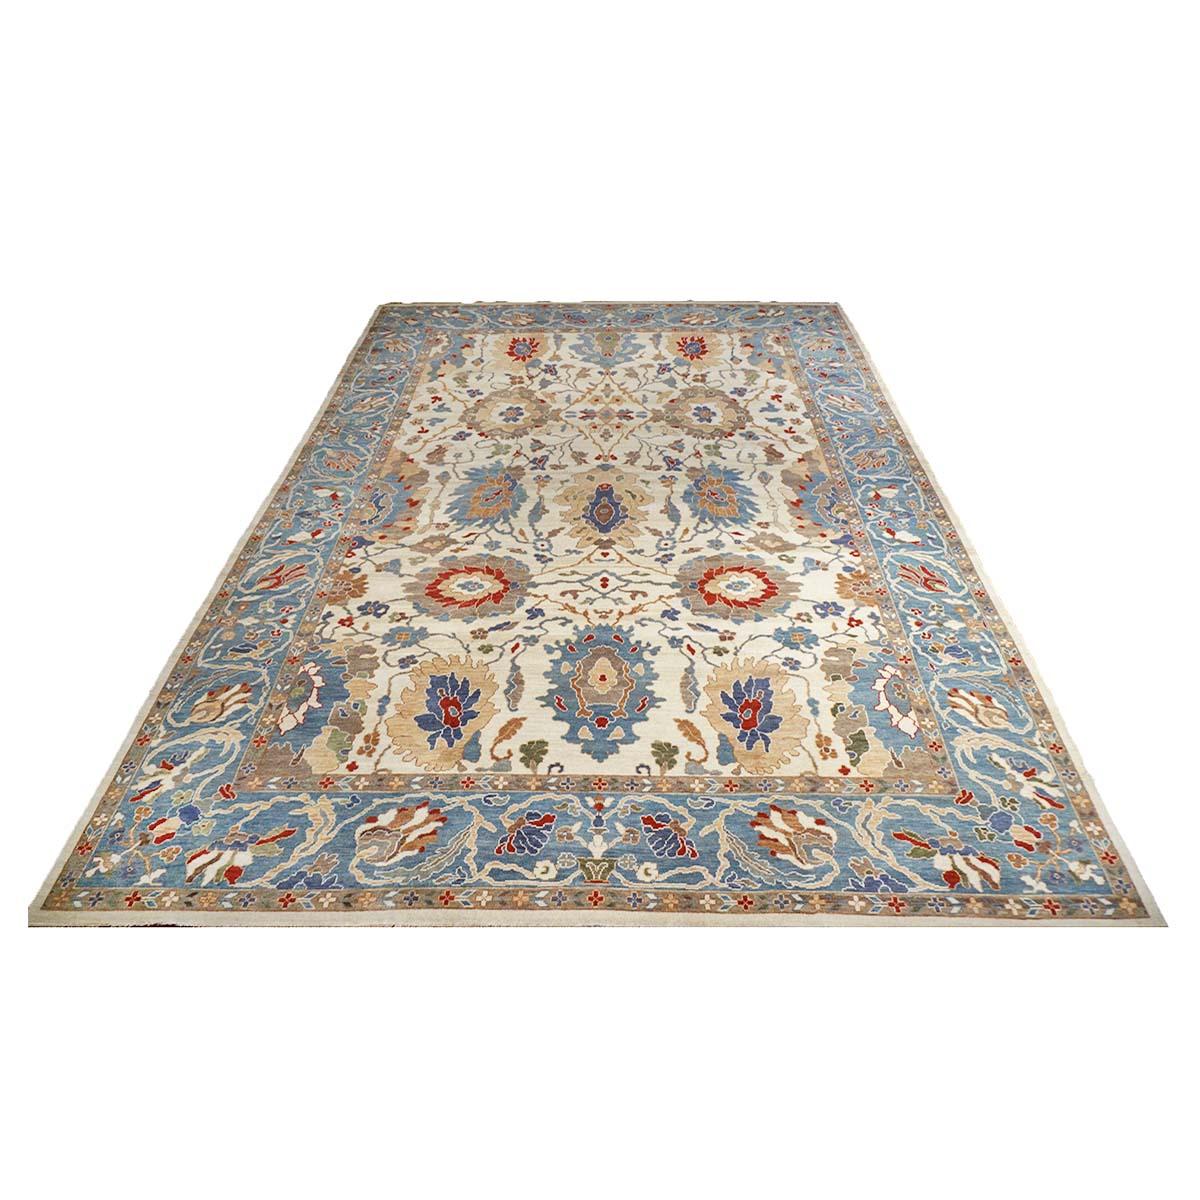 Ashly Fine Rugs présente une reproduction ancienne d'un tapis persan Sultanabad 10x14 bleu et ivoire fait à la main. Faisant partie de notre propre production antérieure, cette reconstitution antique a été pensée et créée en interne et 100% faite à